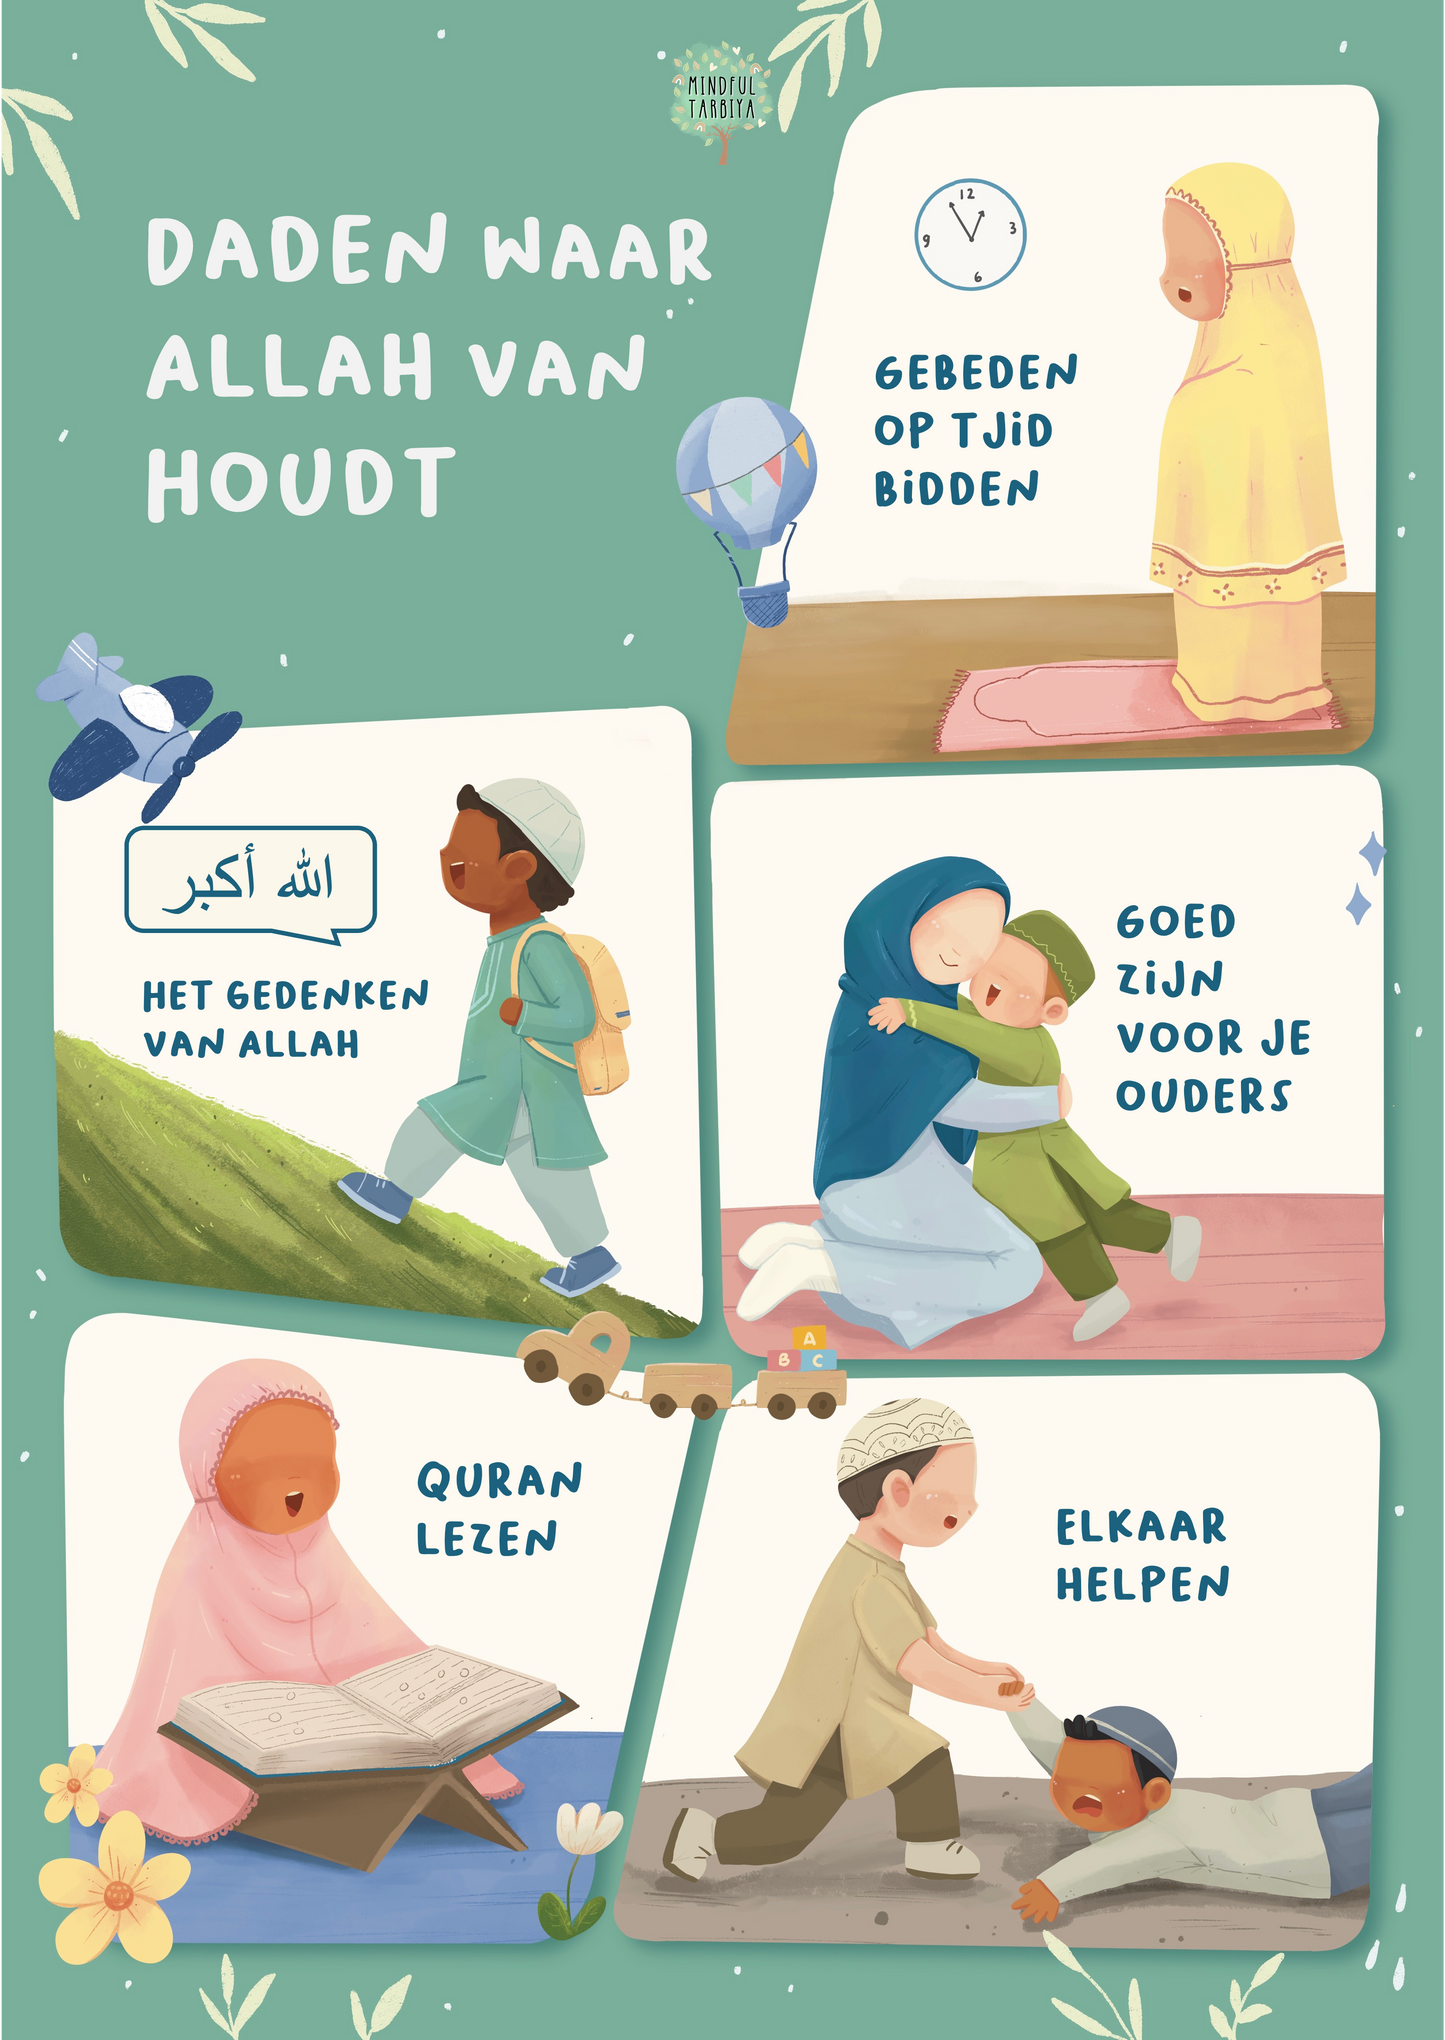 Daden waar Allah van Houdt - poster